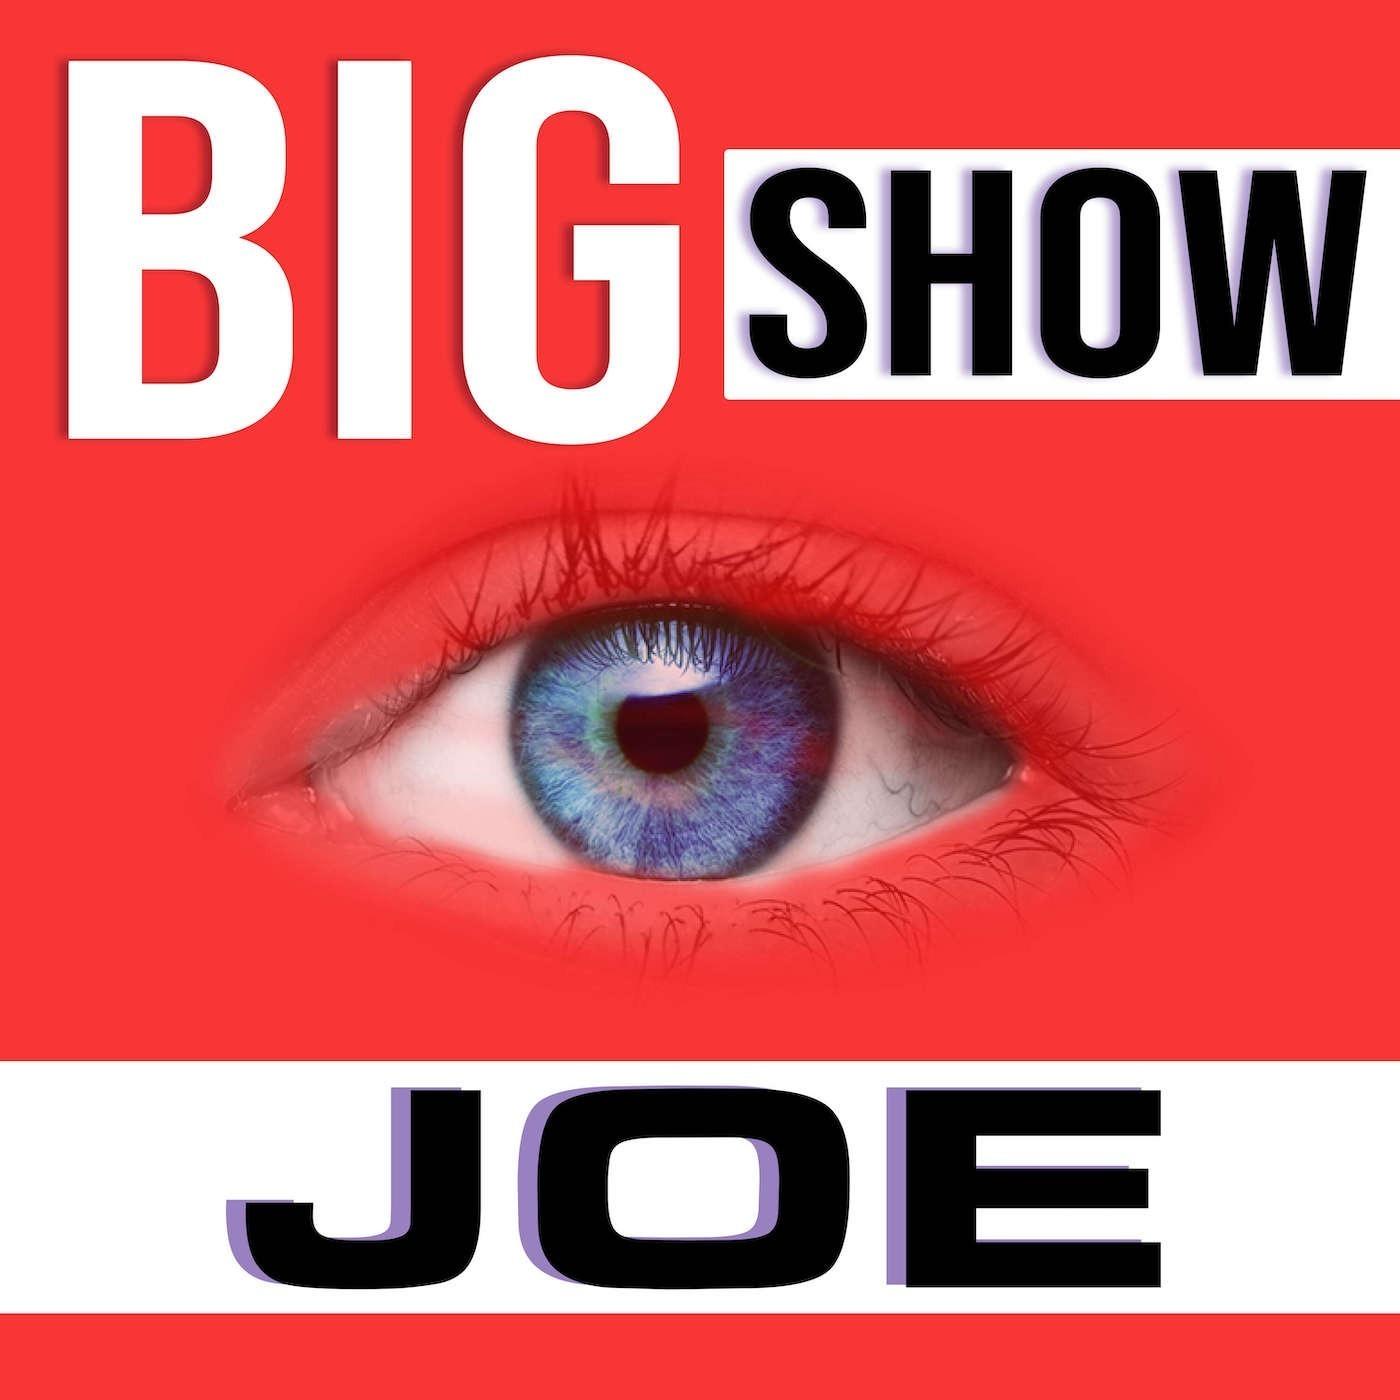 Big Show Joe